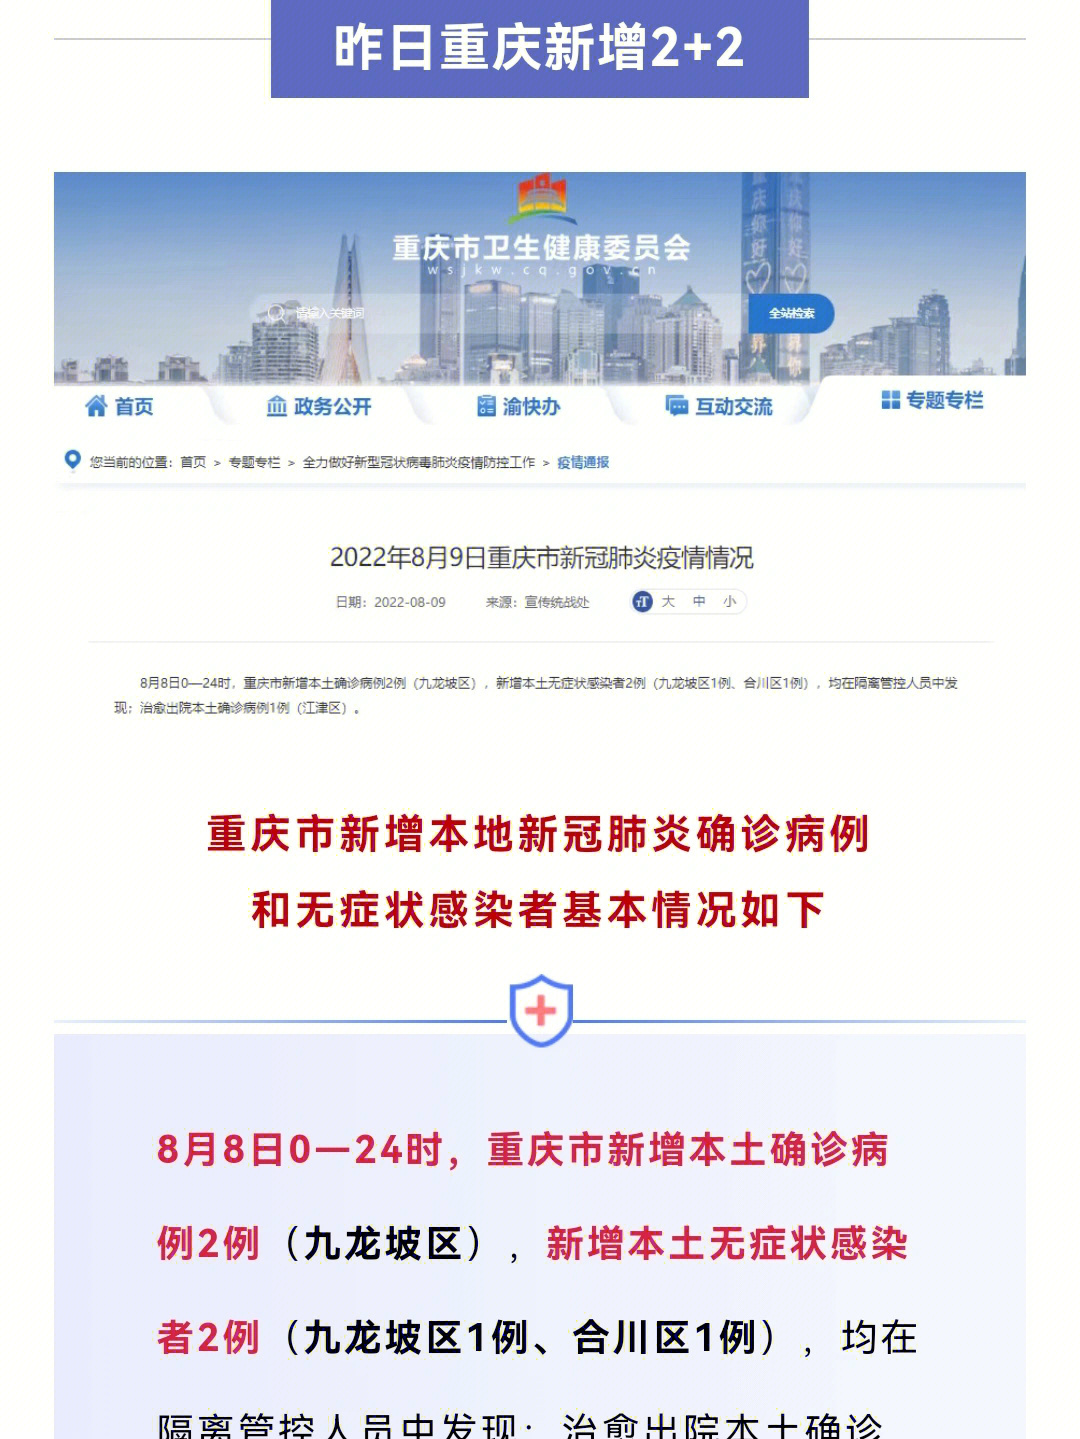 重庆新增22九龙坡确诊病例轨迹公布